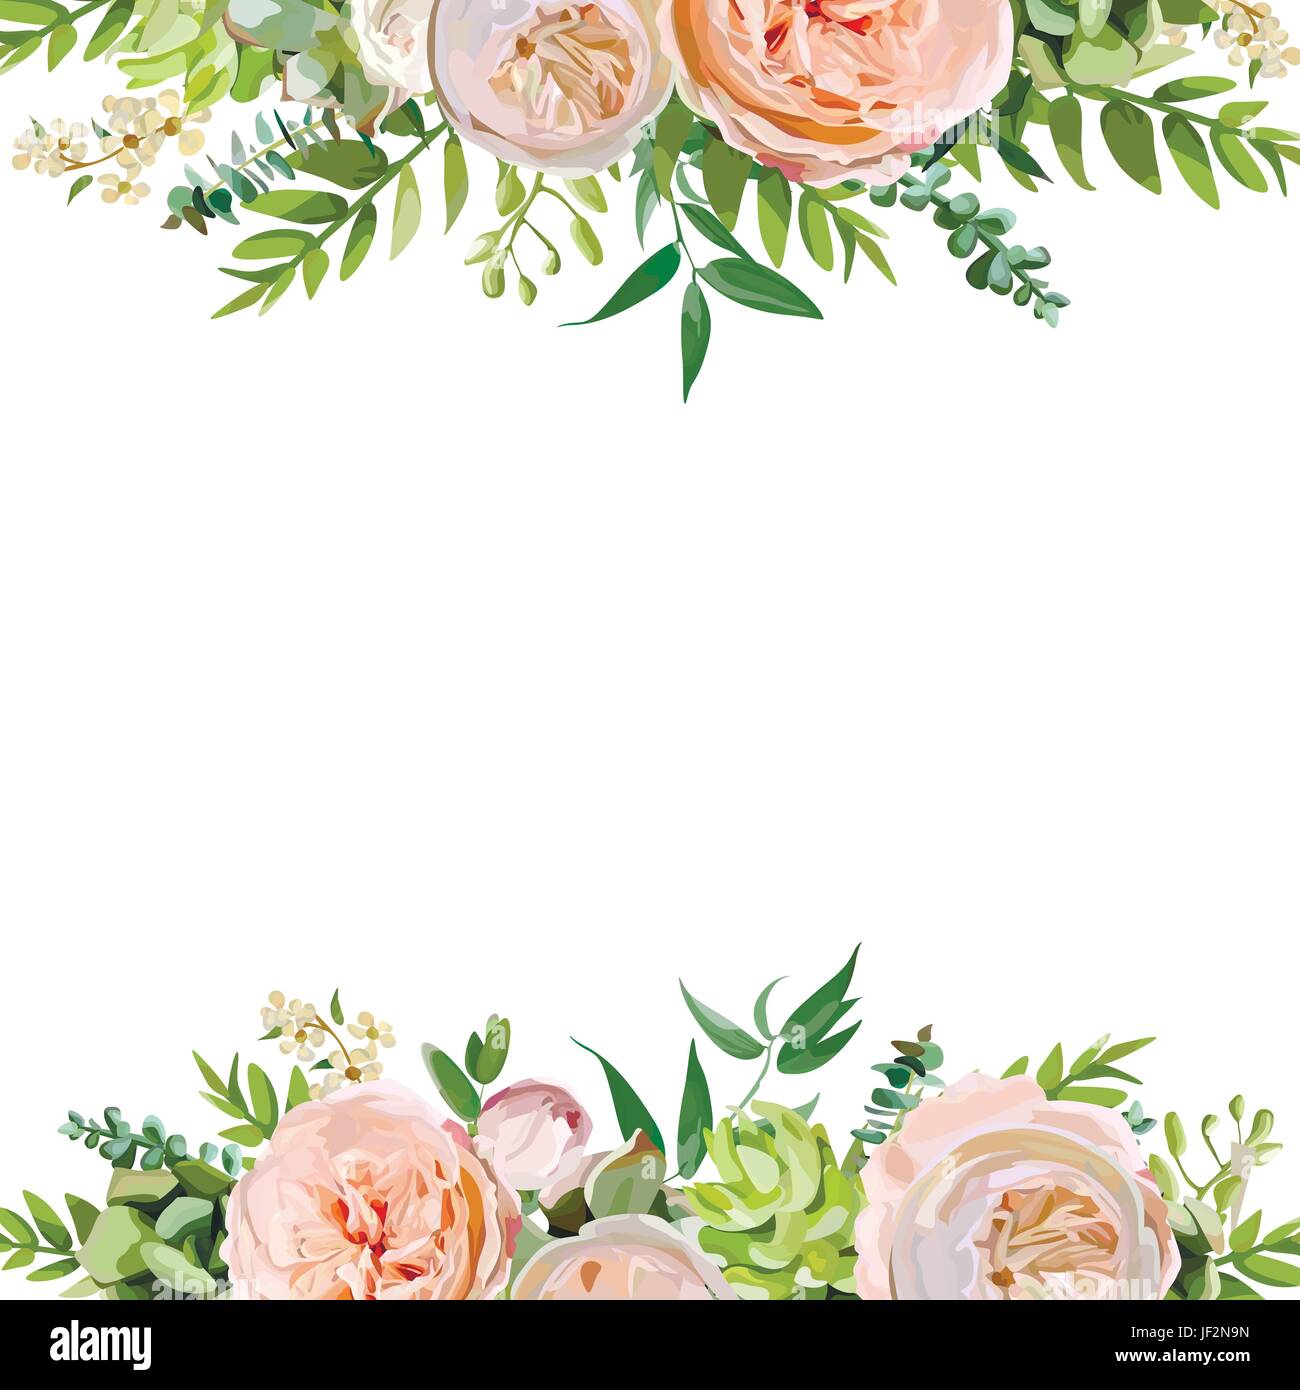 Vektor-floralen Design quadratische Kartendesign. Weiche rosa Pfirsich englischen Garten, Rosenblätter Eukalyptus grüner Farn Mix. Gruß zarte Hochzeitseinladung Stock Vektor